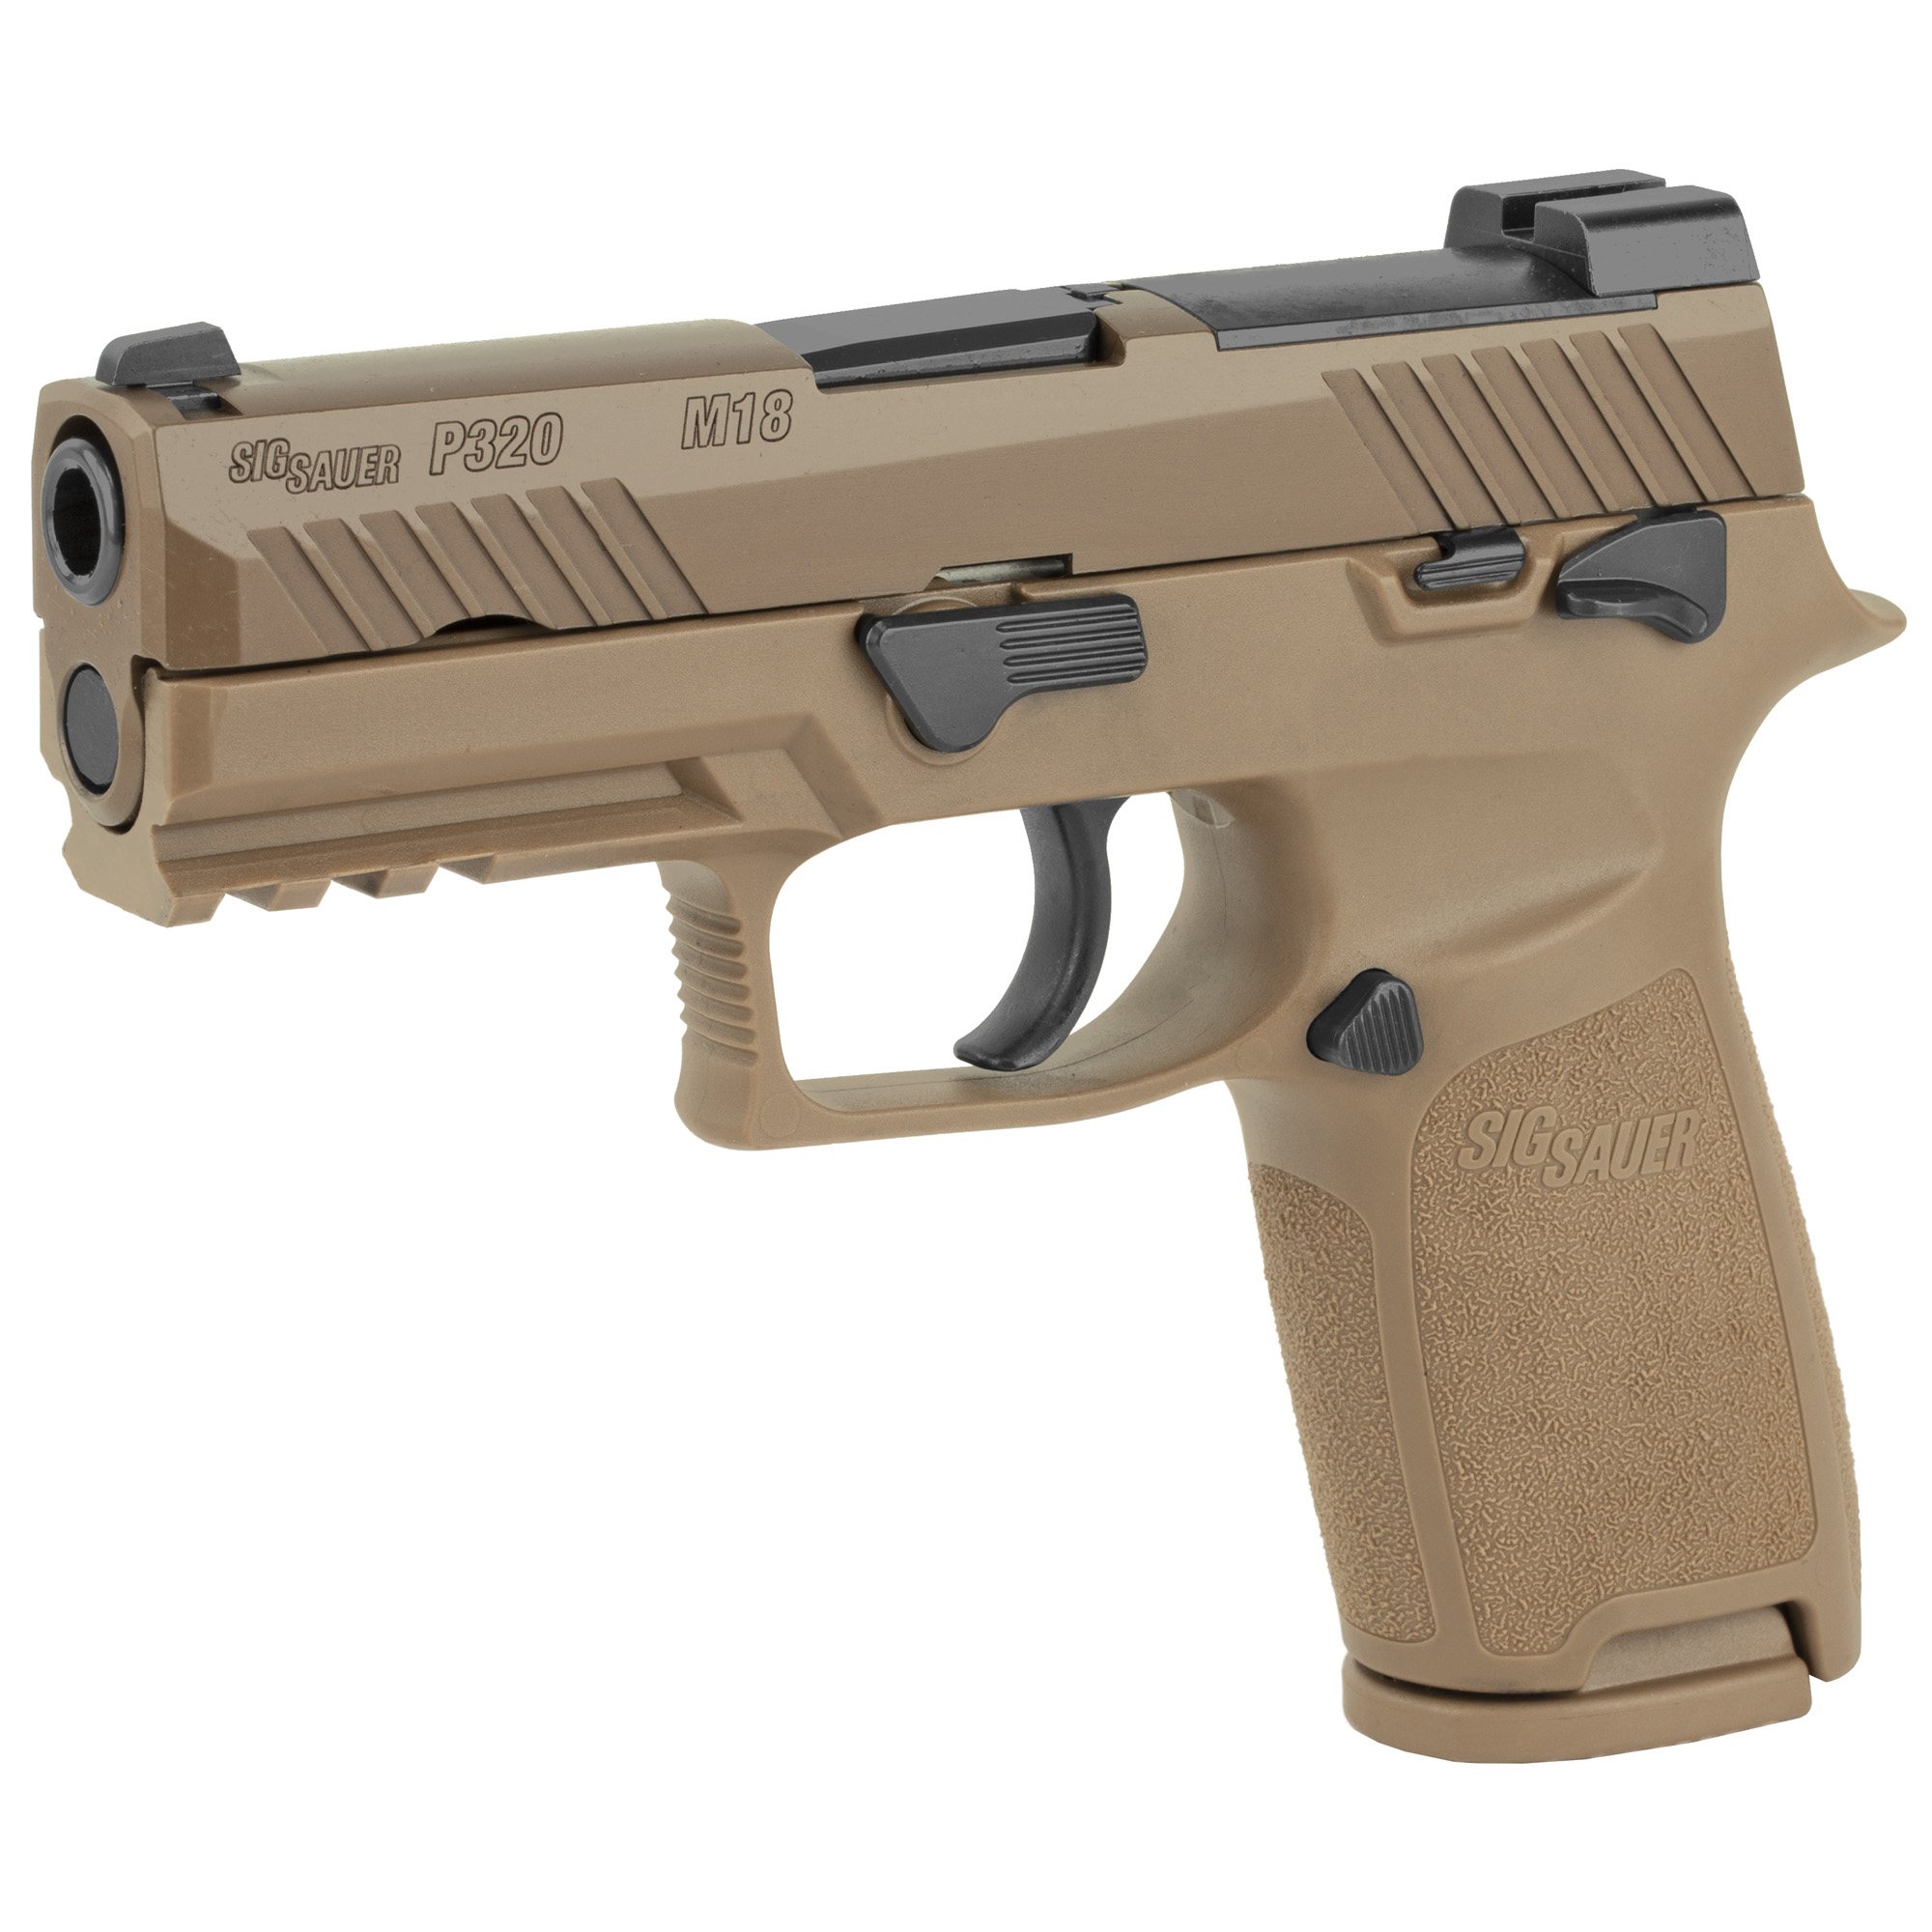 SIG Sauer P320-M18, 9mm, Semi Auto Compact Pistol, Coyote Tan, MPN # 320CA-9-M18-MS, UPC:798681607556